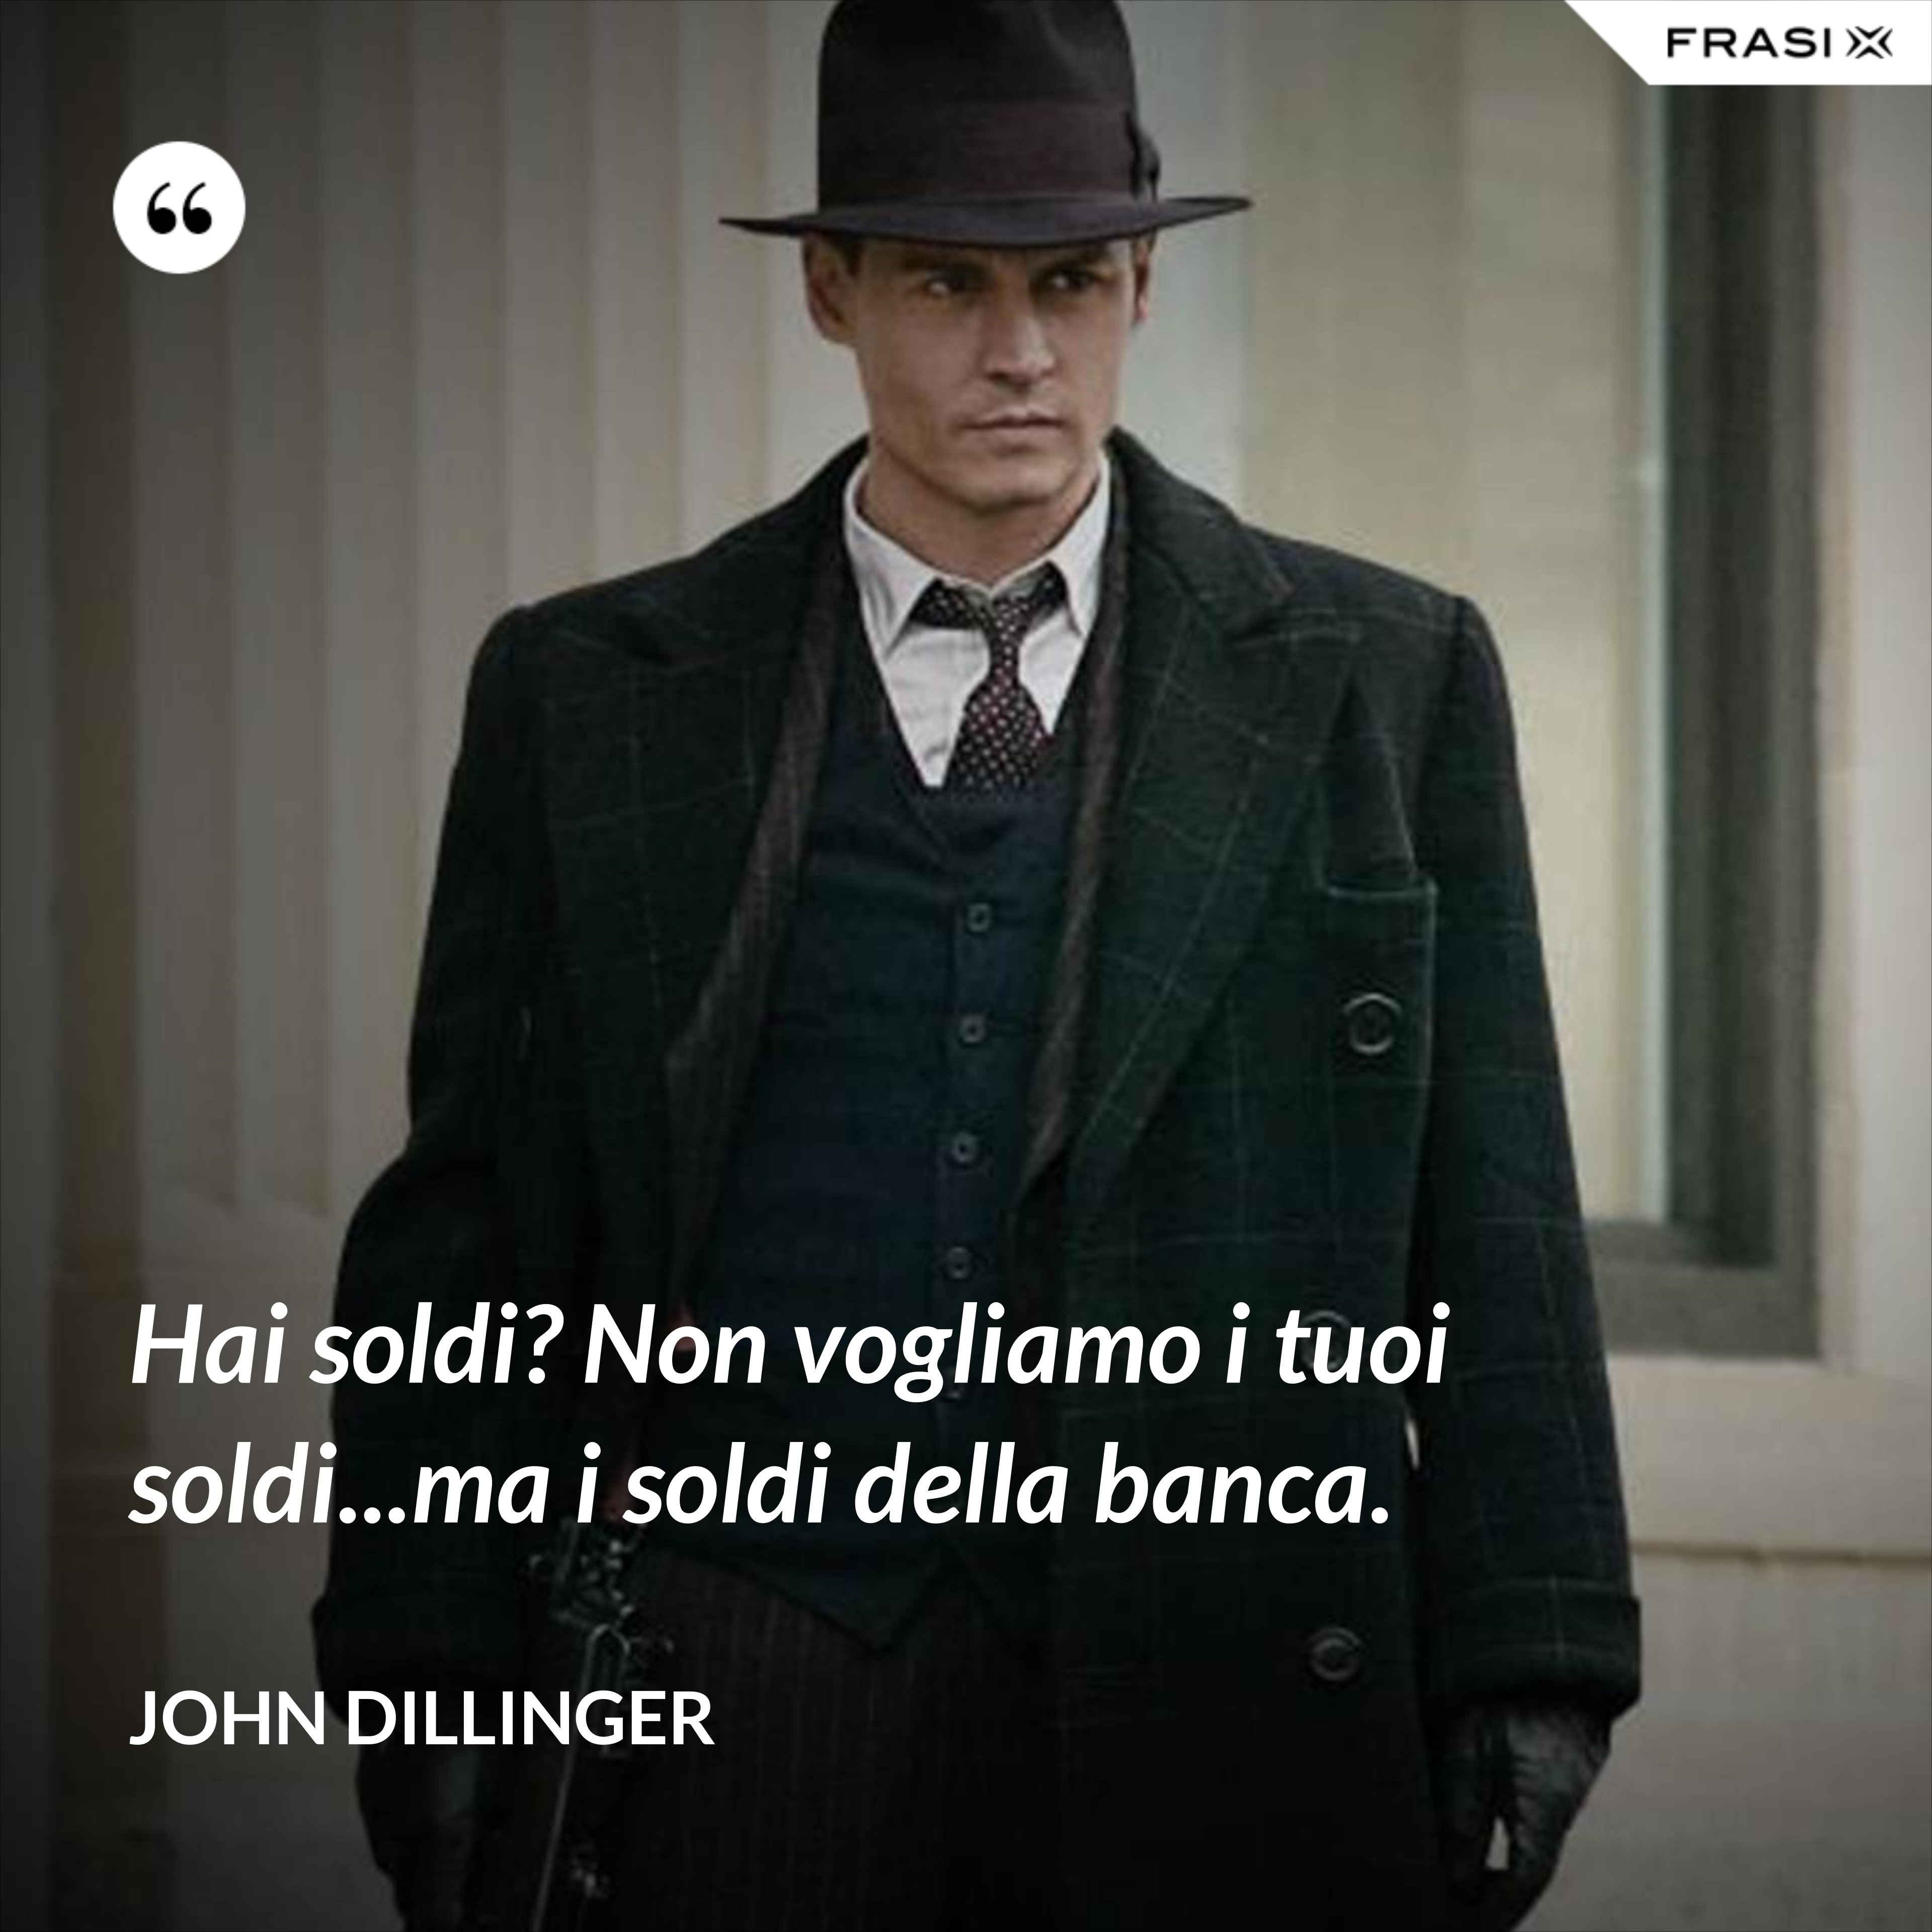 Hai soldi? Non vogliamo i tuoi soldi...ma i soldi della banca. - John Dillinger